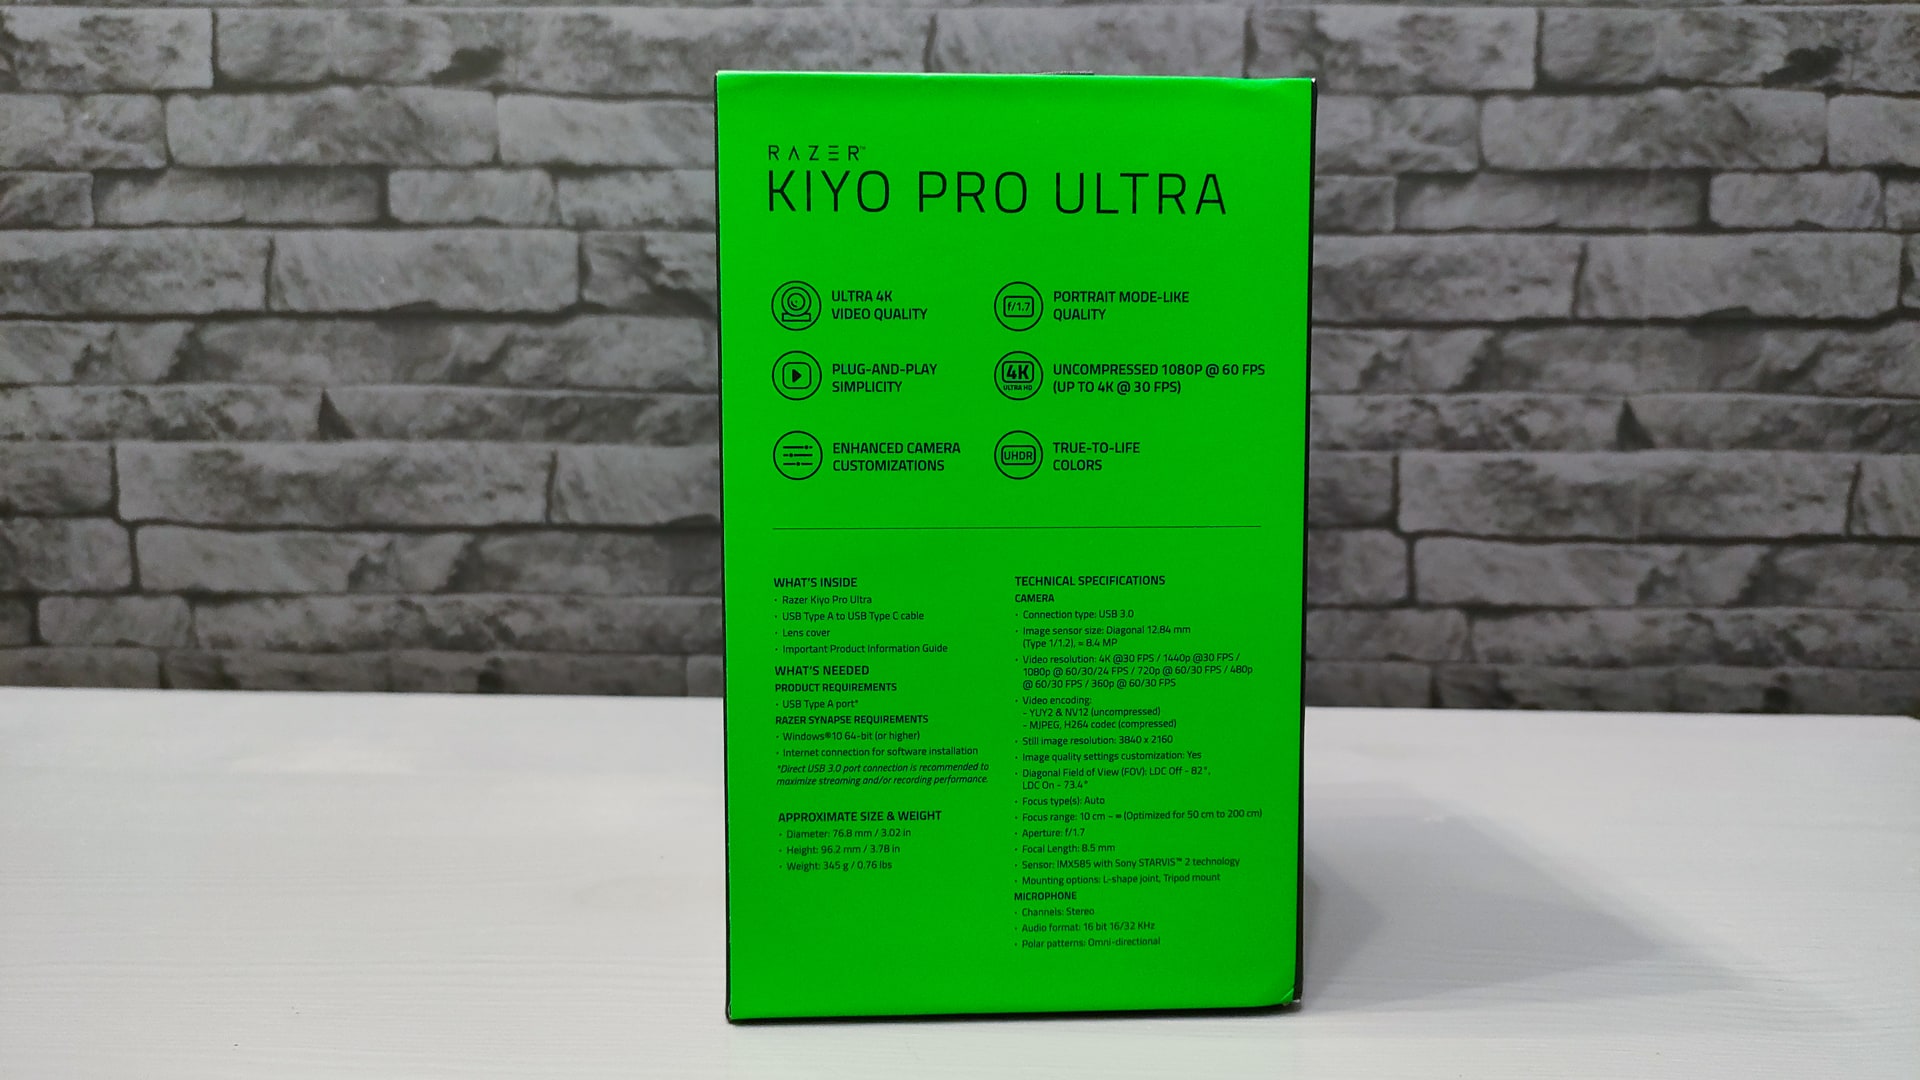 Razer Kiyo Pro Ultra